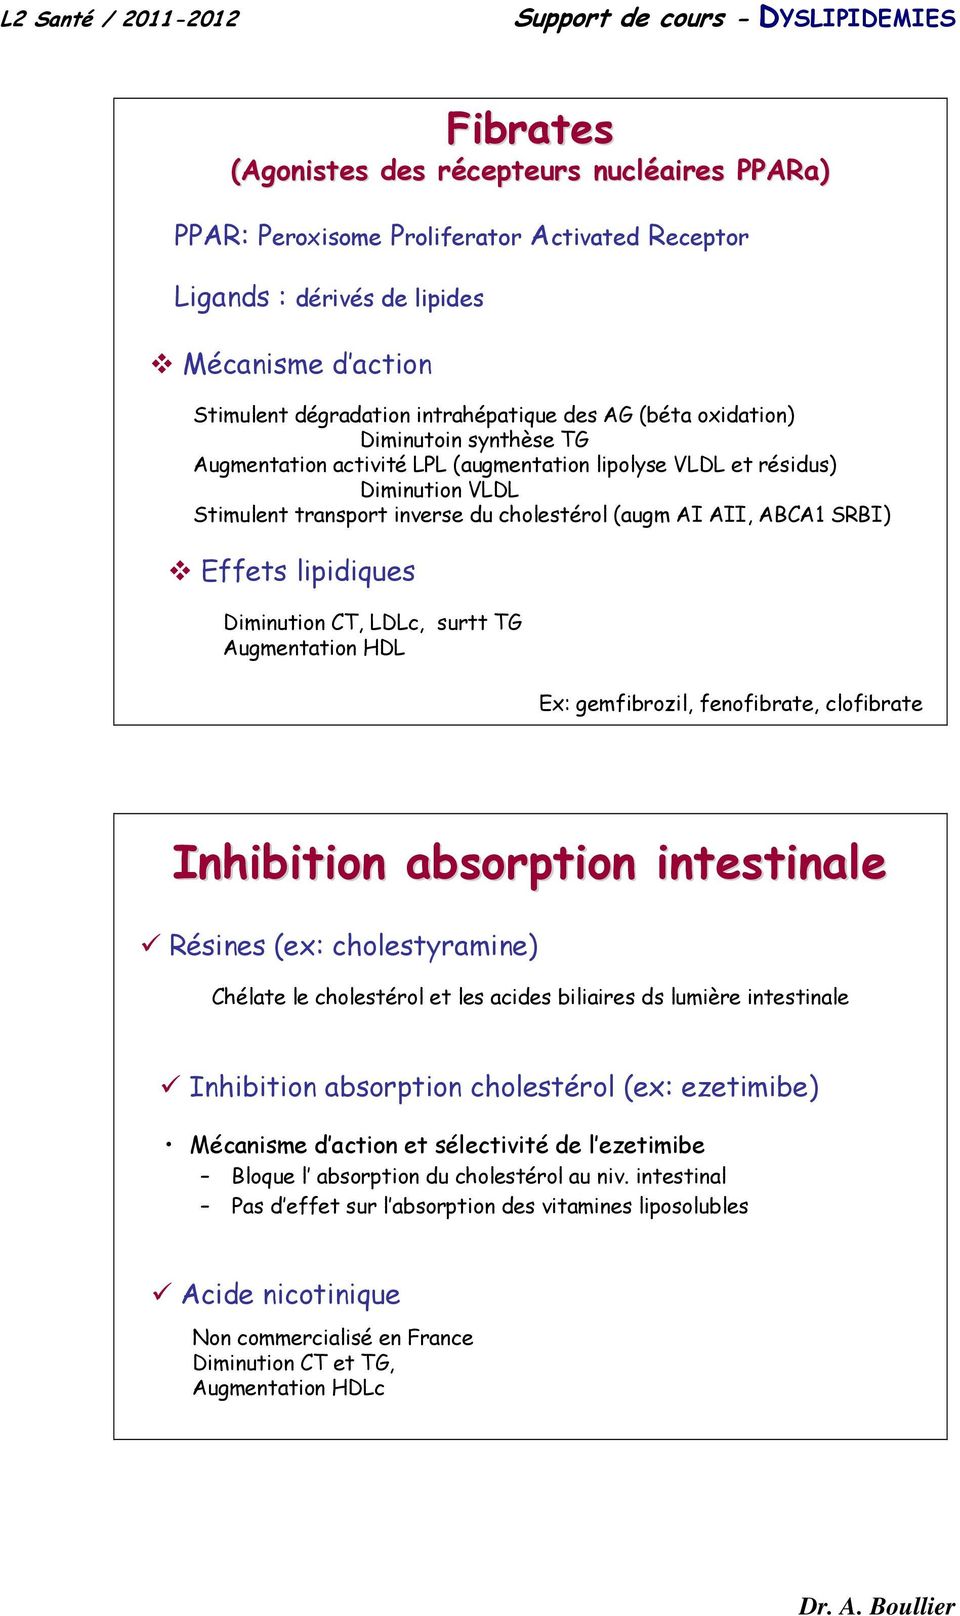 lipidiques Diminution CT, c, surtt TG Augmentation HDL Ex: gemfibrozil, fenofibrate, clofibrate Inhibition absorption intestinale Résines (ex: cholestyramine) Chélate le cholestérol et les acides